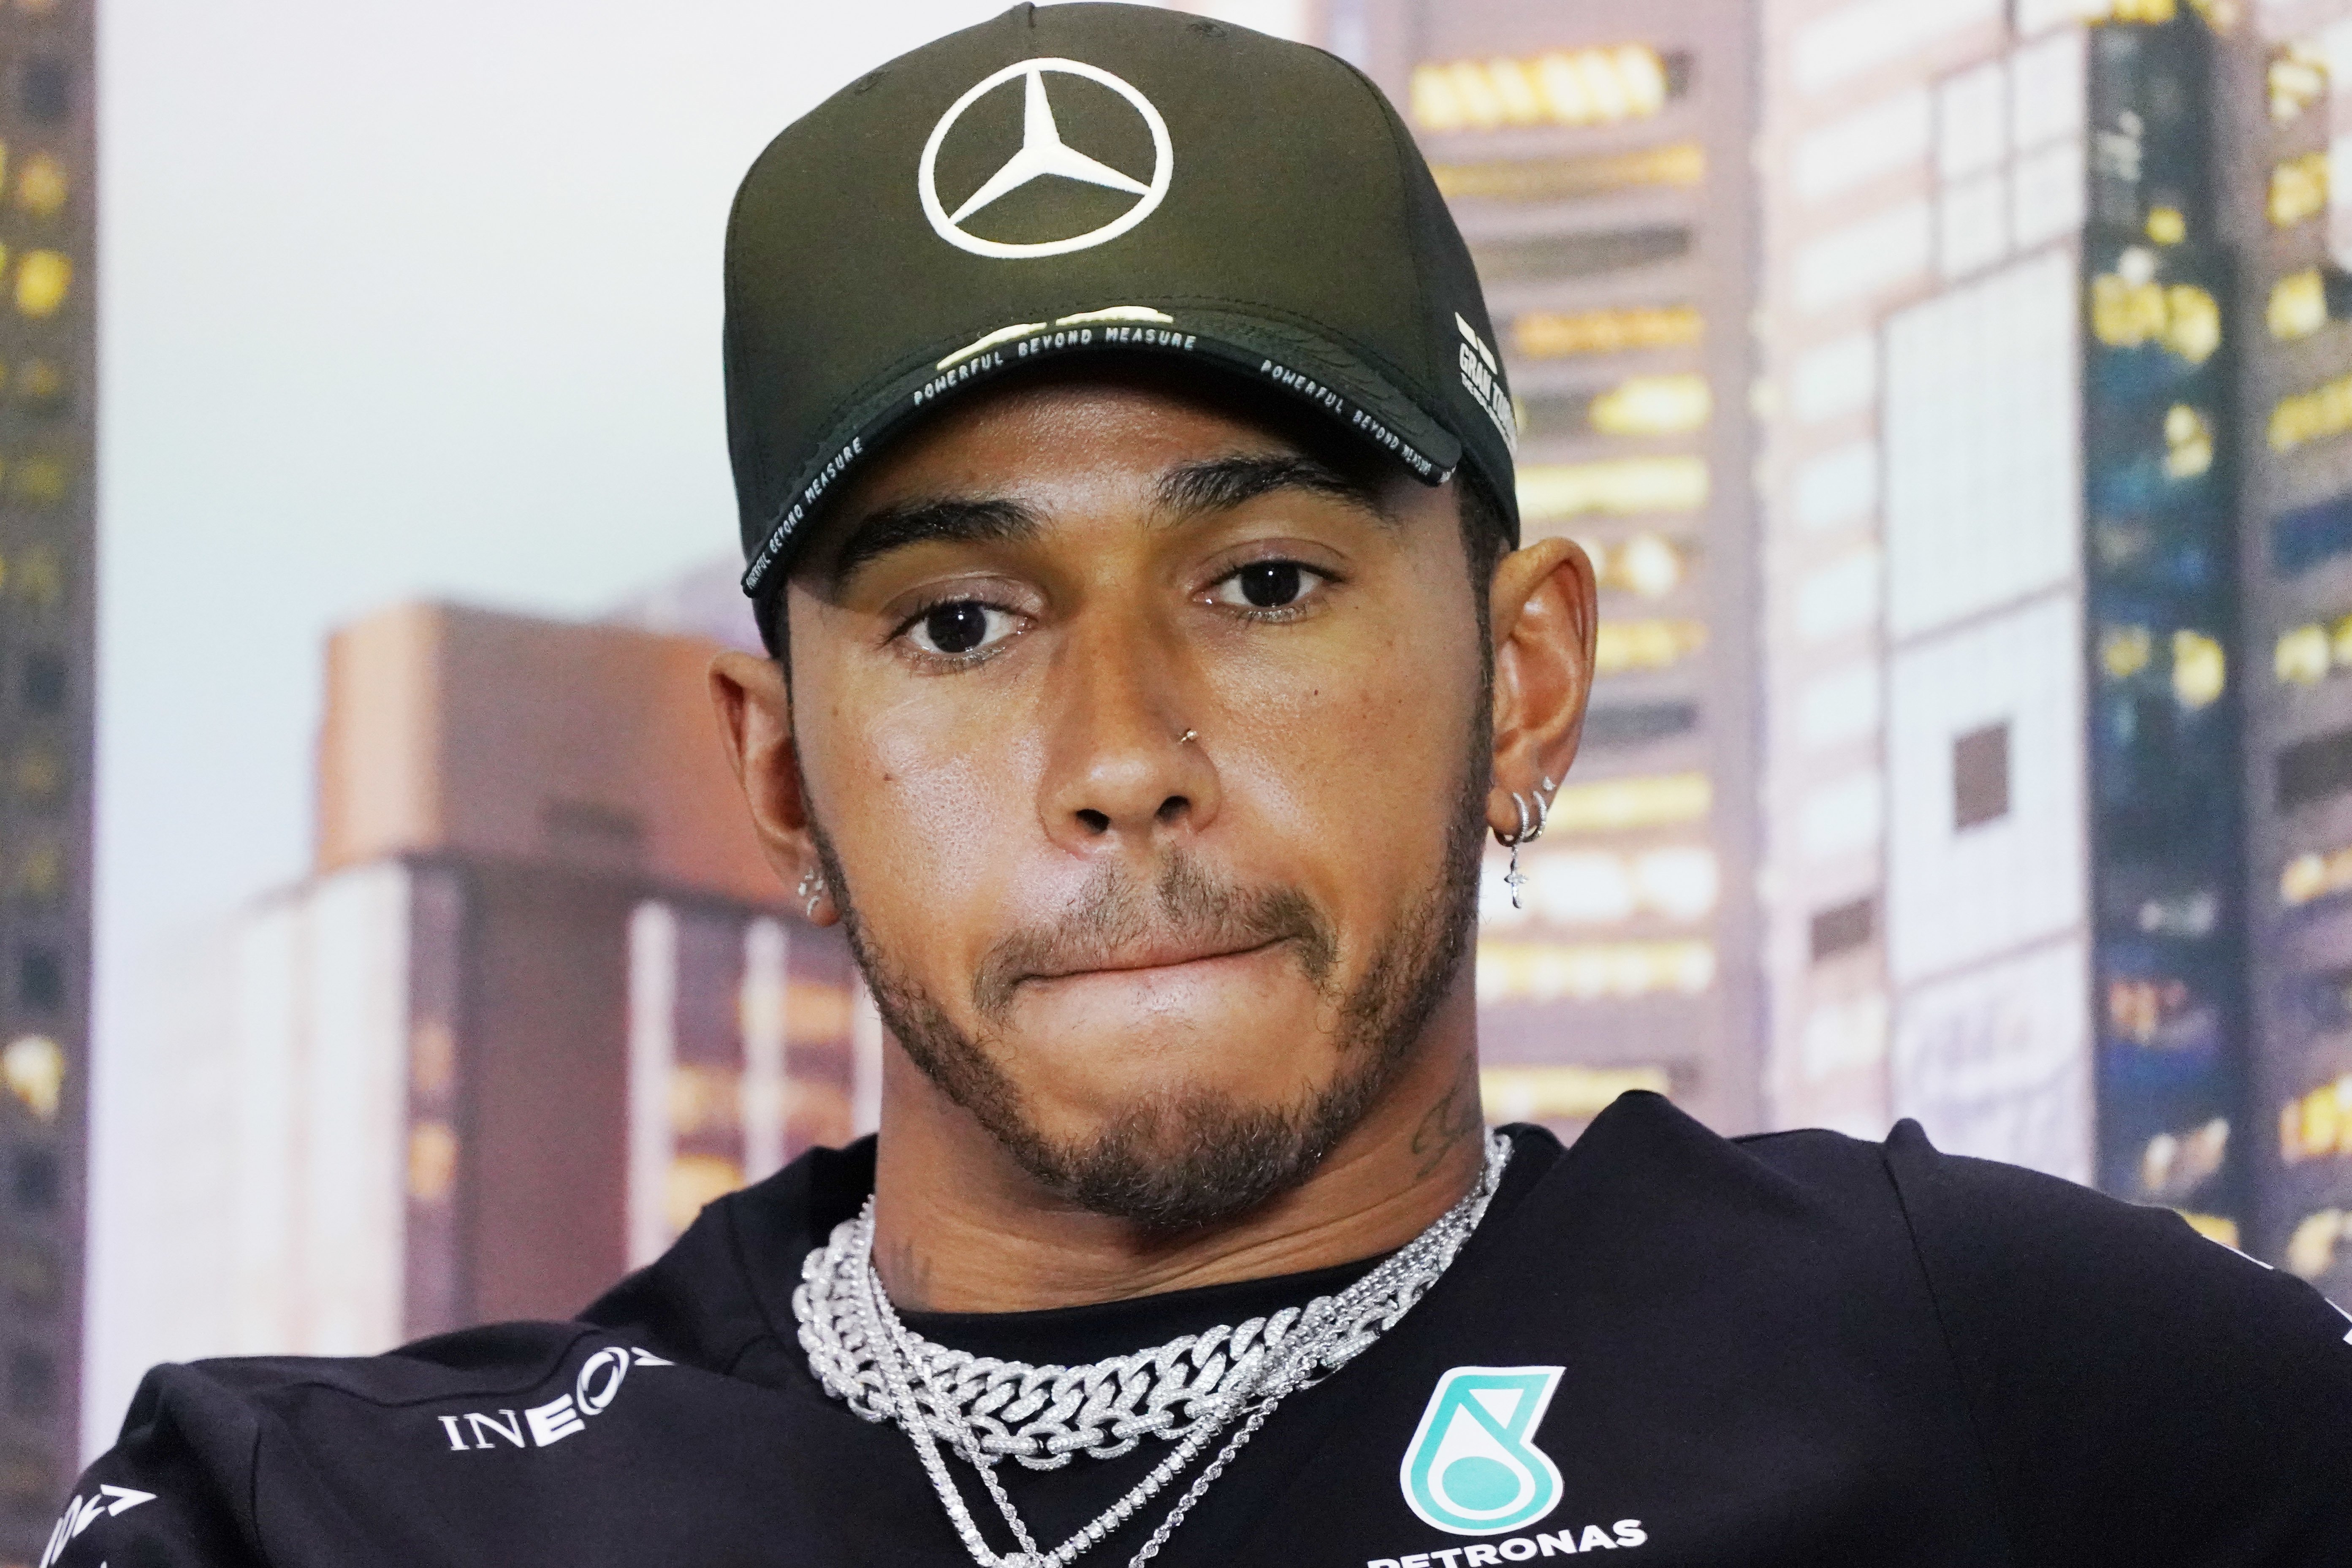 El durísimo mensaje de Hamilton a la F1 sobre la muerte de Floyd: "Estoy solo"